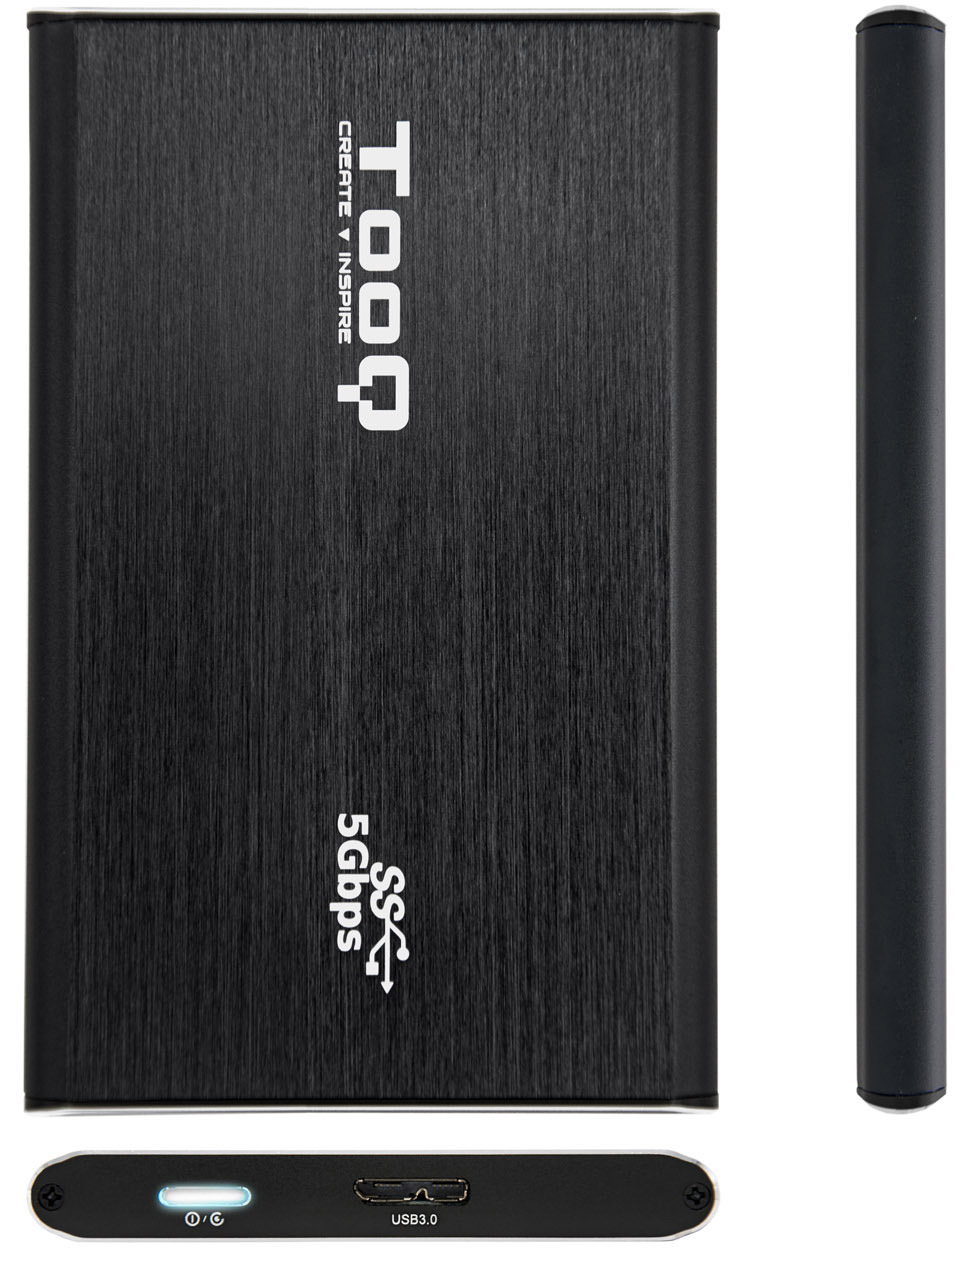 Tooq - Caixa HDD Tooq 2.5" SATA (7mm) USB 3.0 UASP